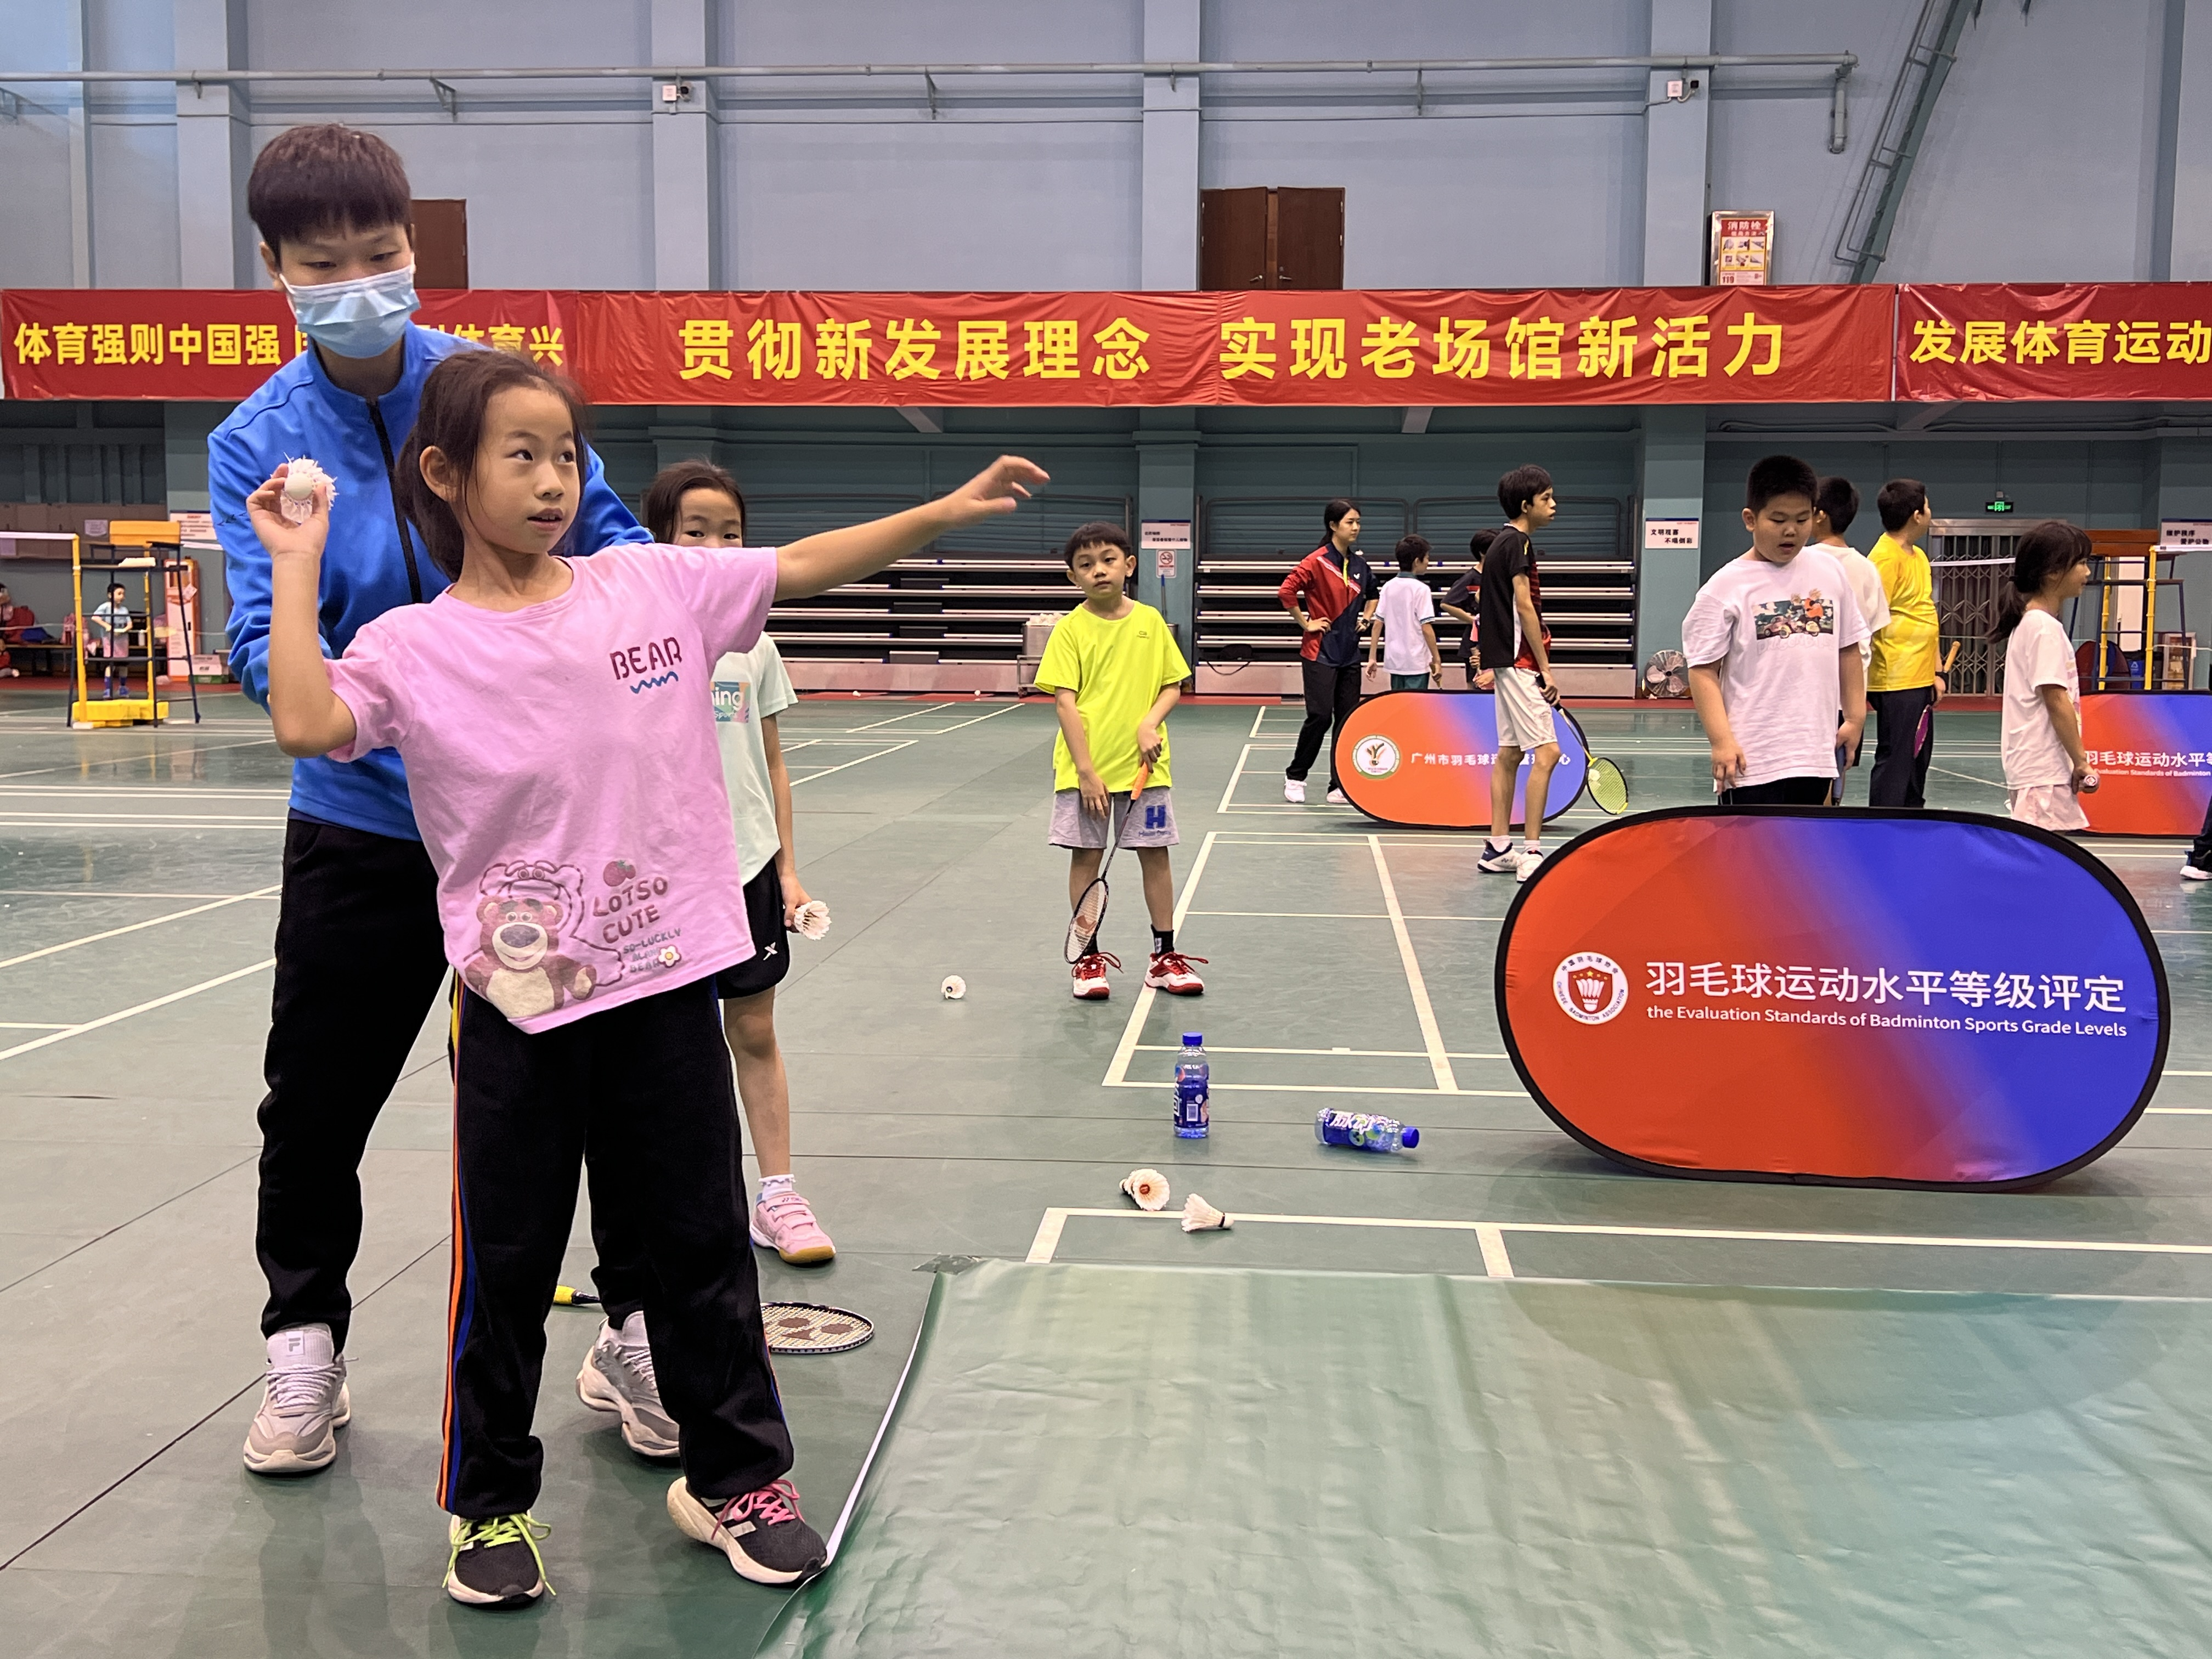 【娱乐888】第十六届“市长杯”羽毛球公益课堂结束